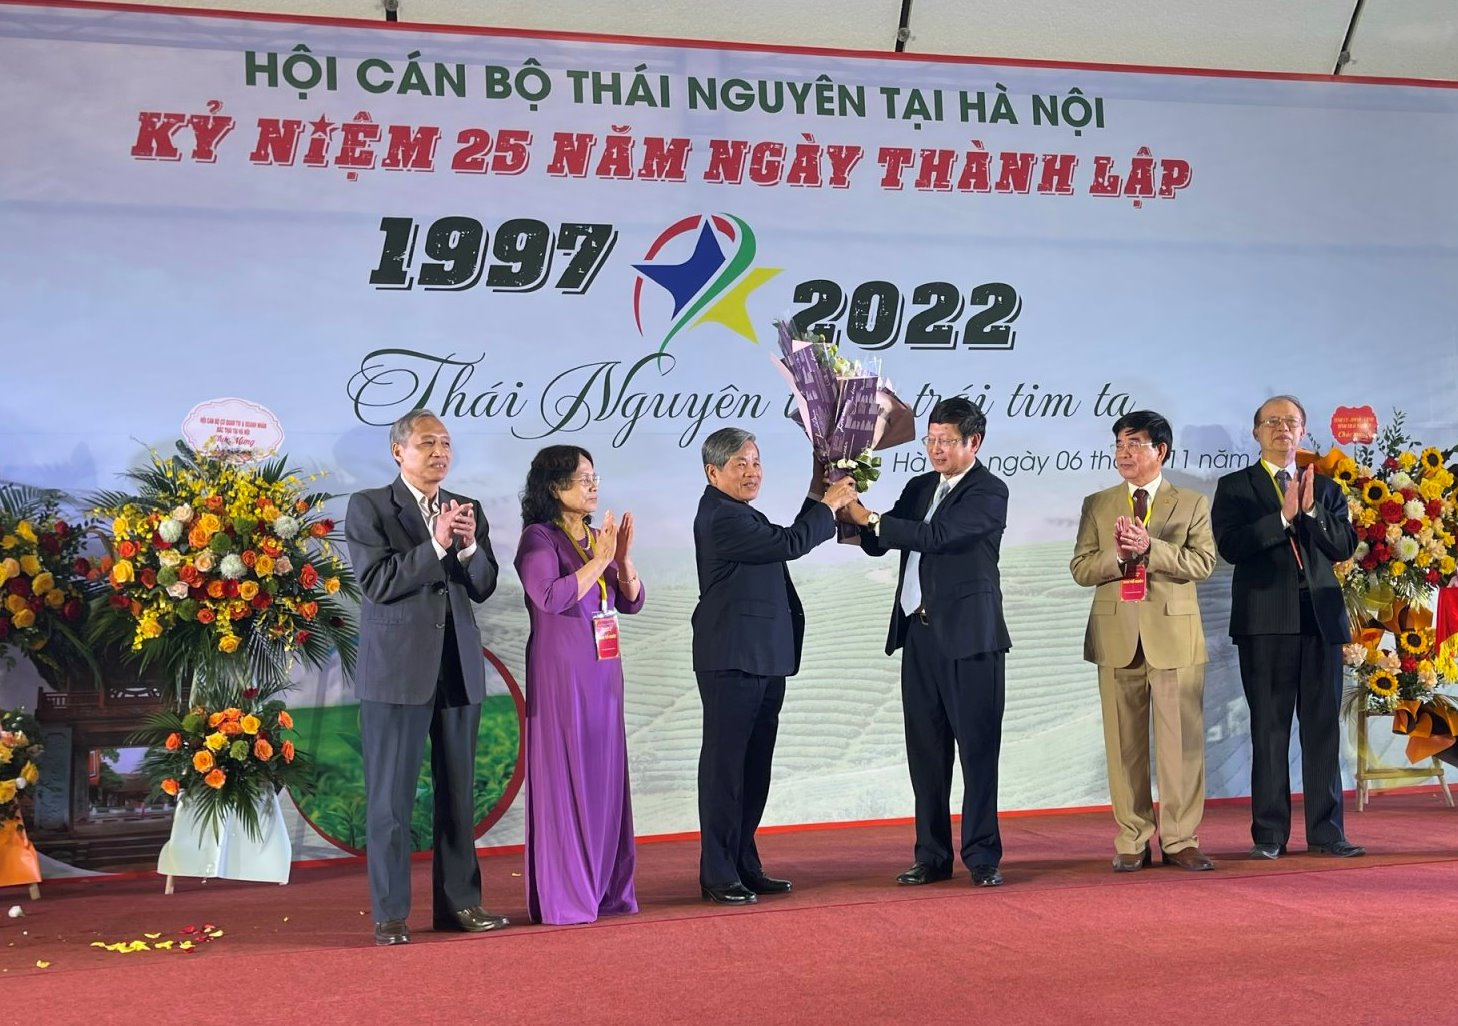 Hội cán bộ Thái Nguyên tại Hà Nội tổ chức Kỷ niệm 25 năm thành lập